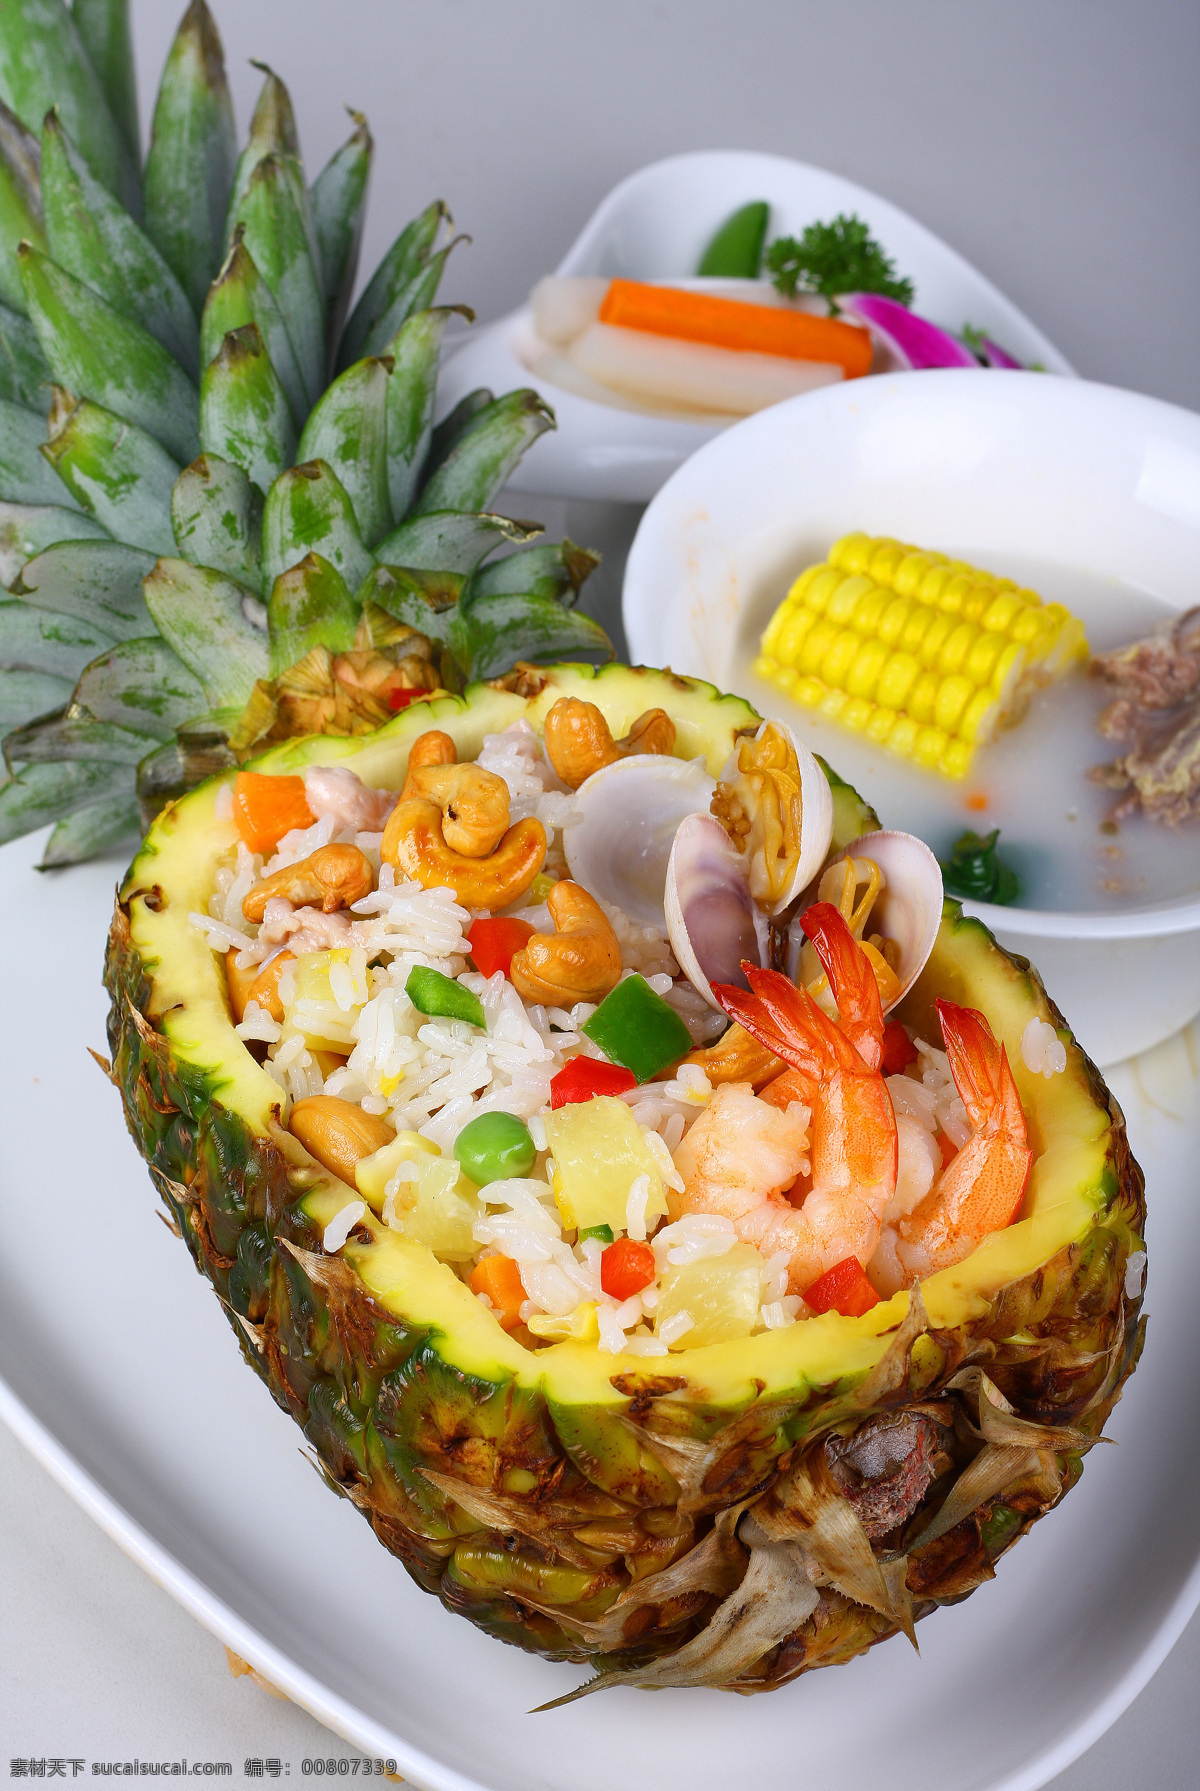 夏威夷 菠萝 炒饭 菠萝炒饭 中式美食 传统美食 餐饮美食